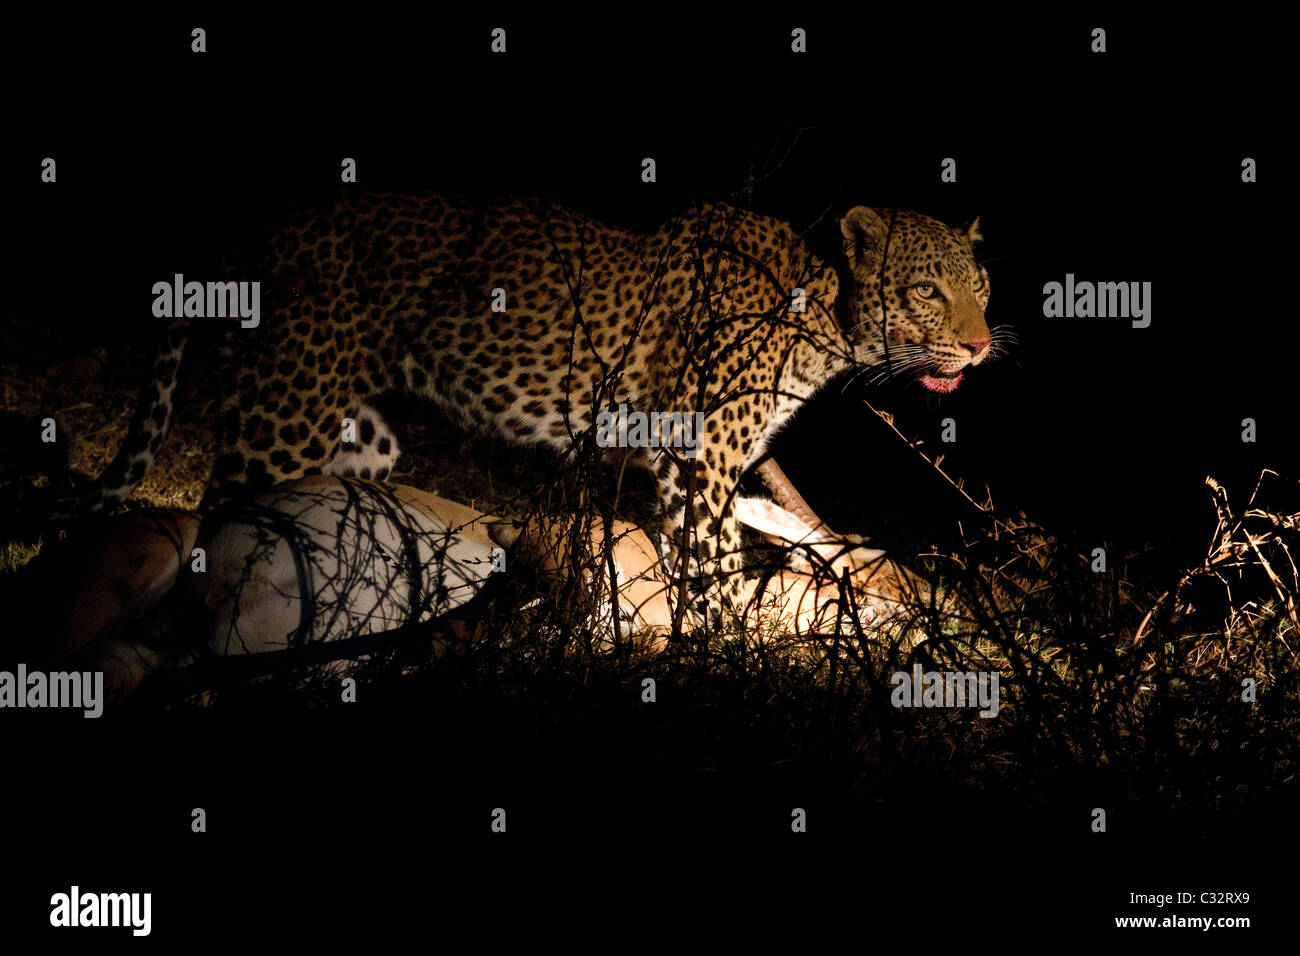 Leopard with fresh kill Stock Photo